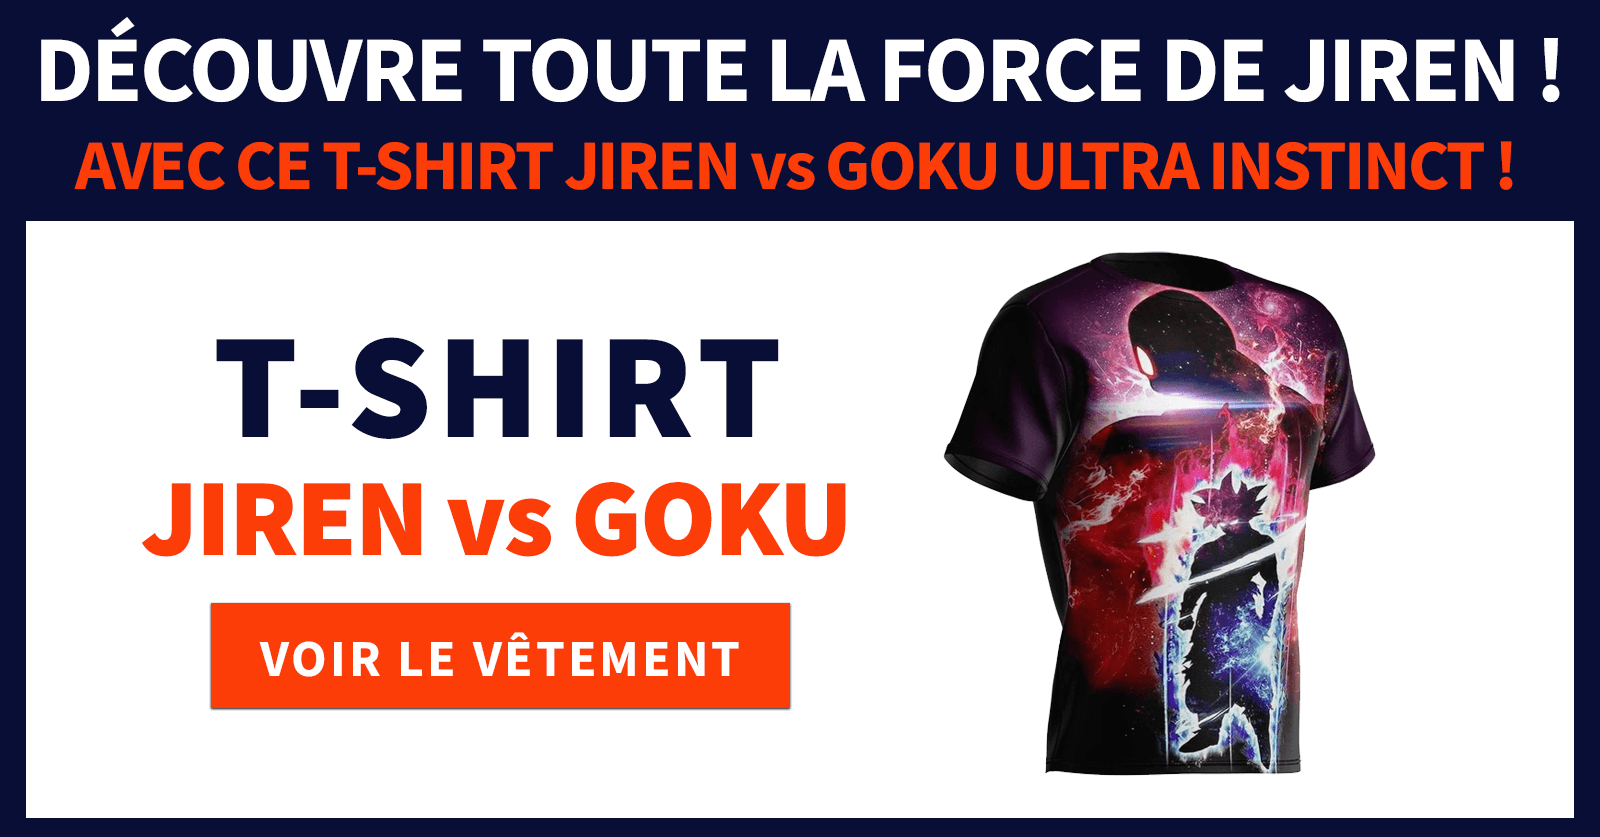 T-Shirt Goku vs Jiren